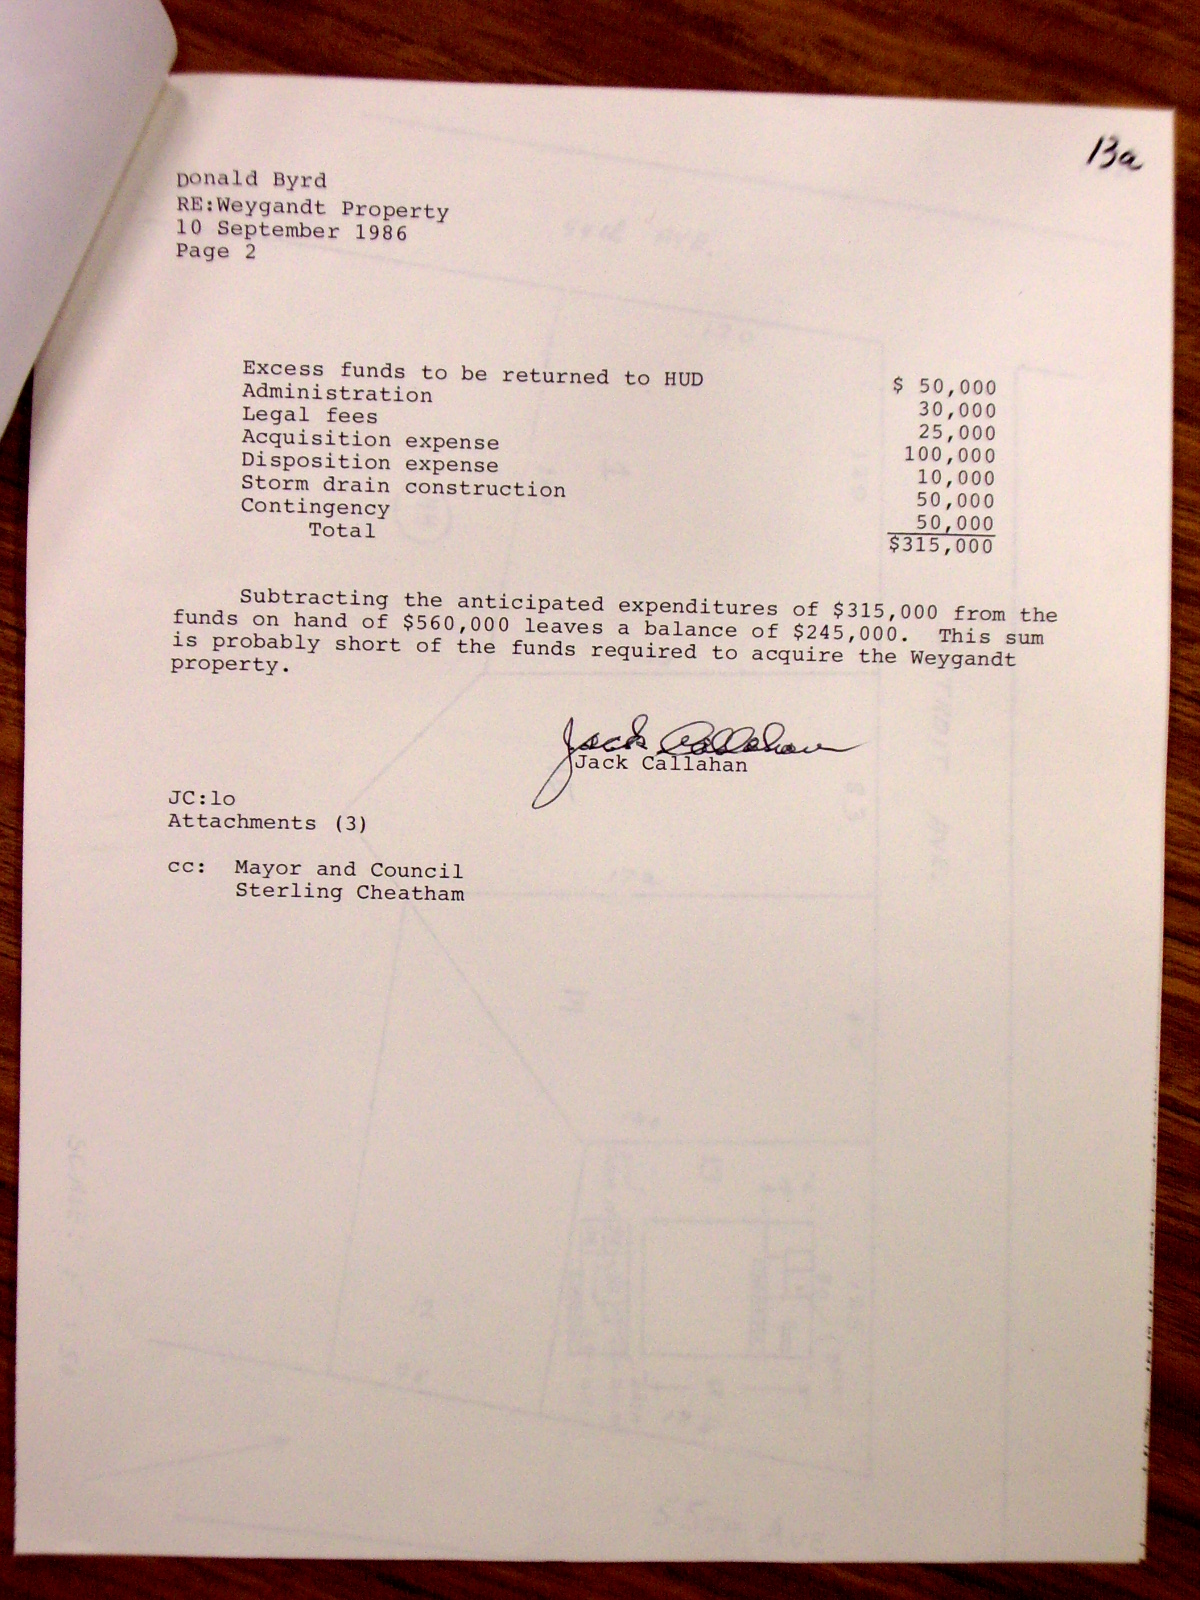 Memorandum from Jack Callahan to Donald Byrd